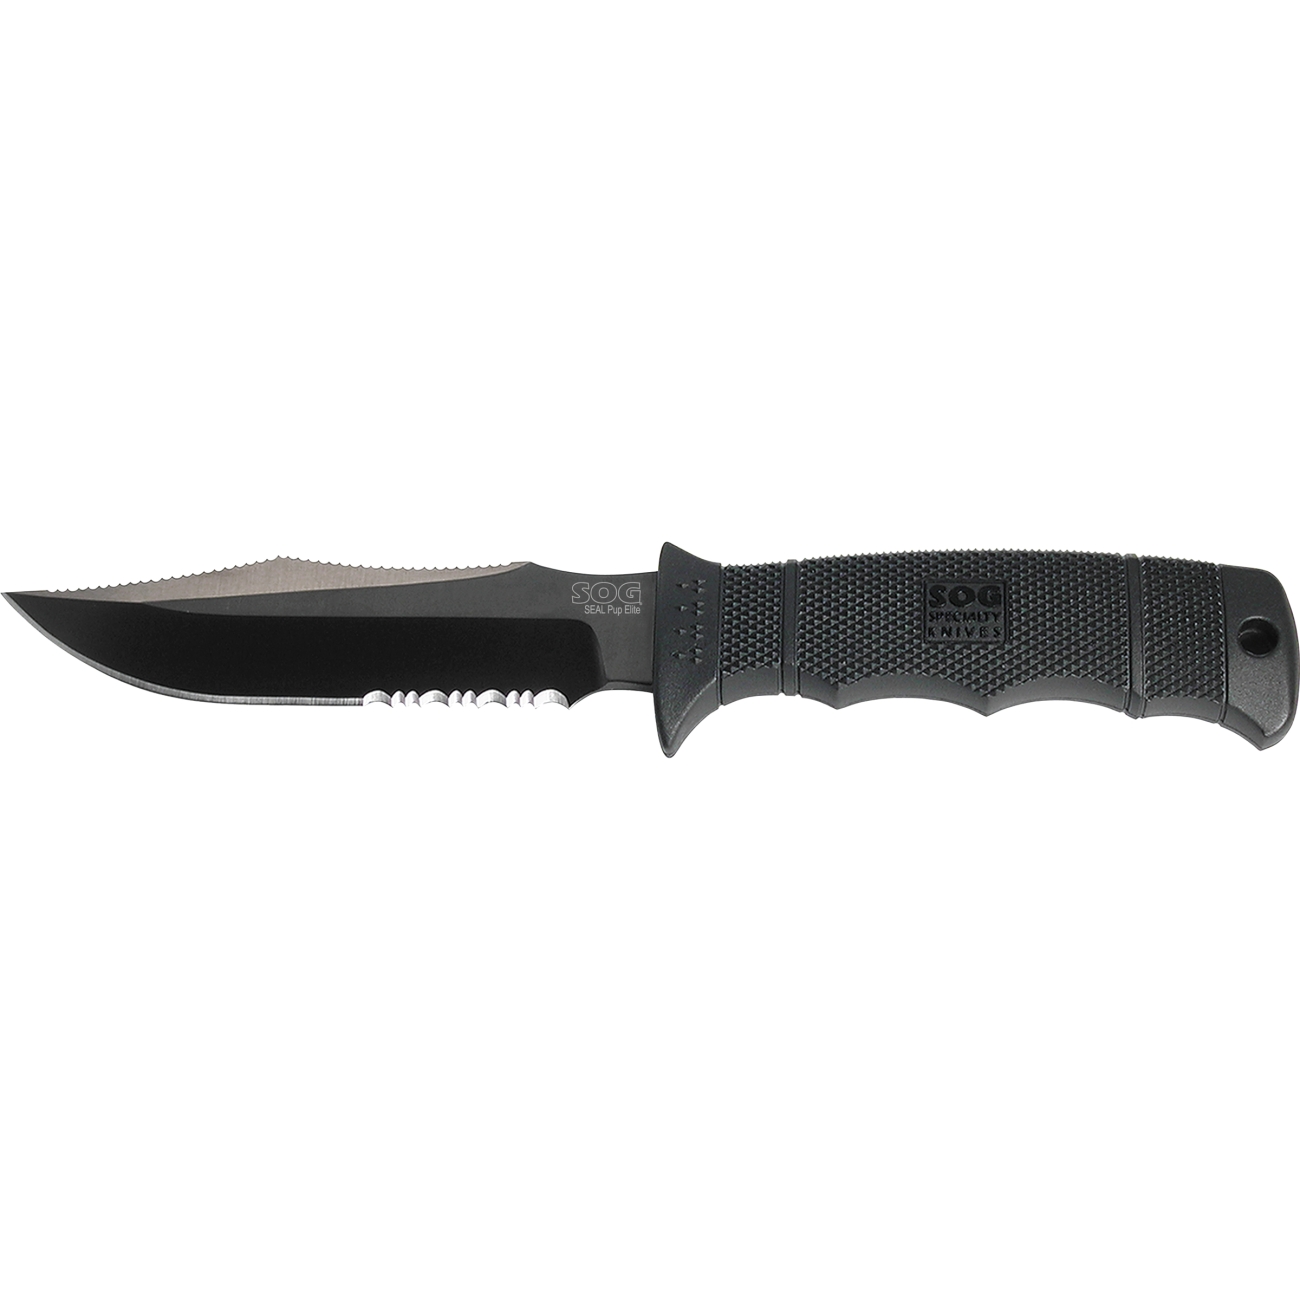 KNIFE, SEAL PUP ELITE - 4.85 KNIFE